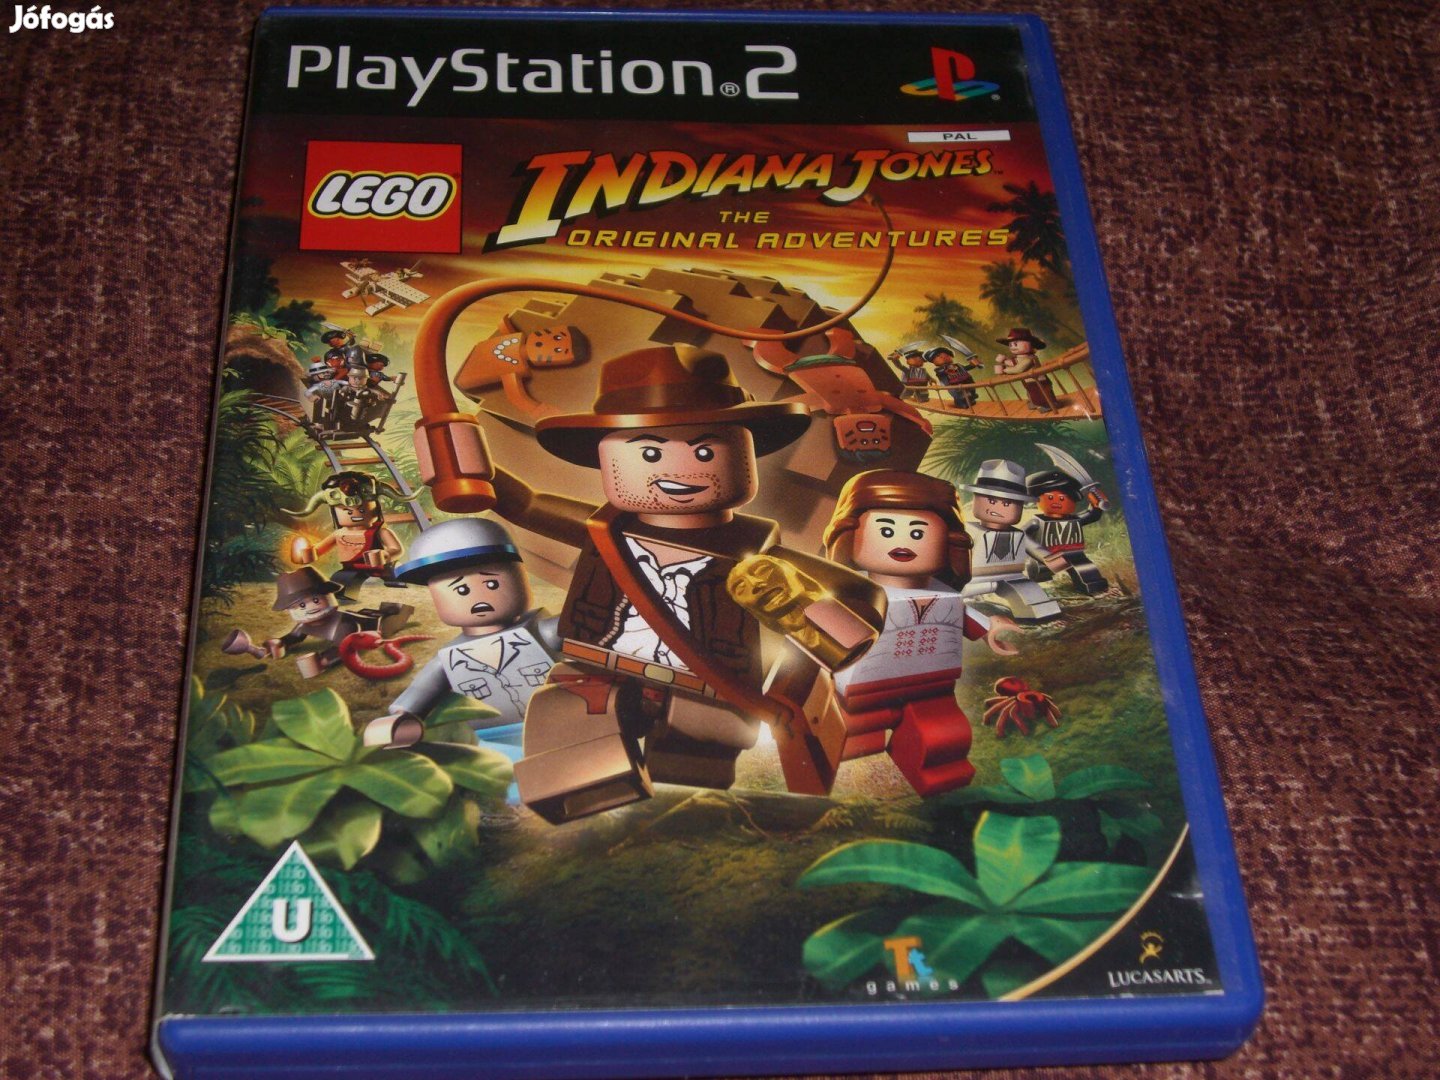 Lego Indiana Jones Playstation 2 eredeti lemez ( 6000 Ft )